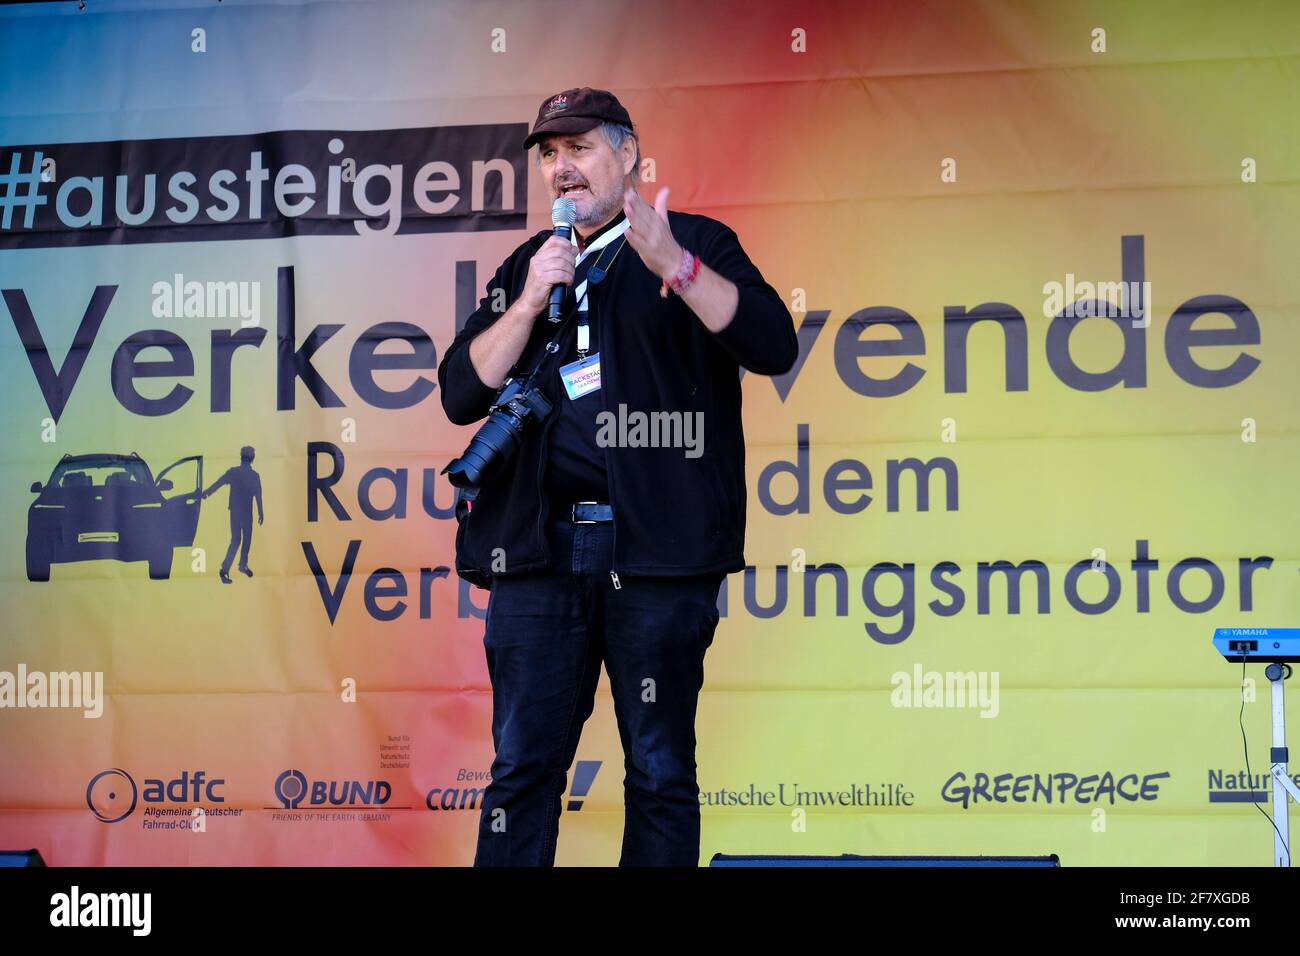 14.09.2019, Frankfurt am Main, Hessen, Deutschland - Uwe Hiksch (Die Linke), Mitorganisator von Demonstration und Sternfahrt, spricht auf dem Platz an Stock Photo